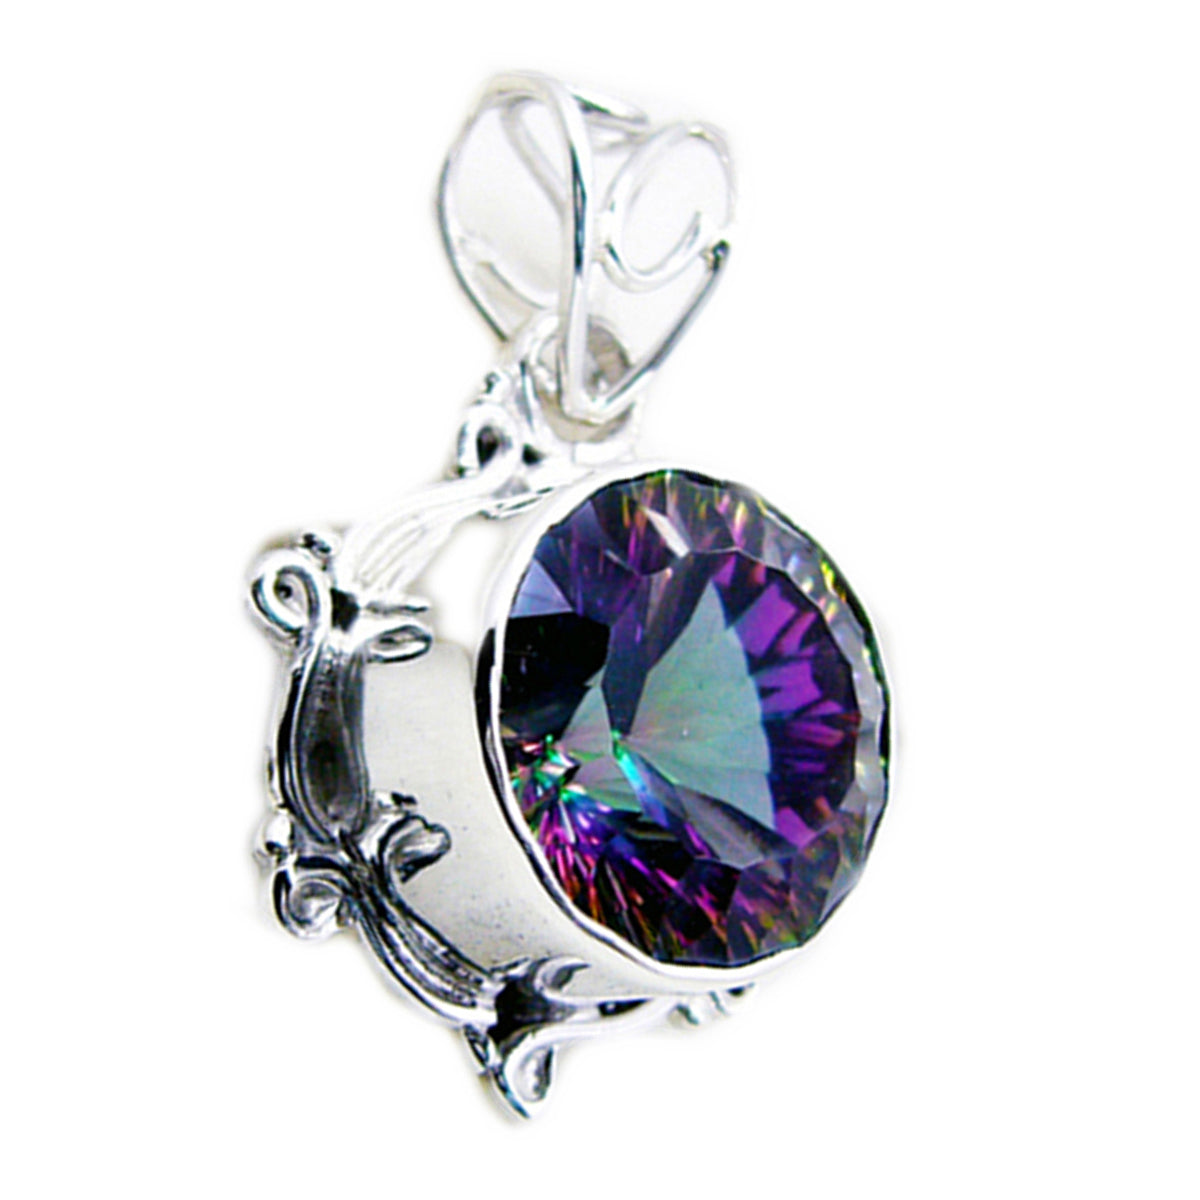 riyo magnifiche gemme rotonde sfaccettate multicolore quarzo mistico ciondolo in argento massiccio regalo per matrimonio